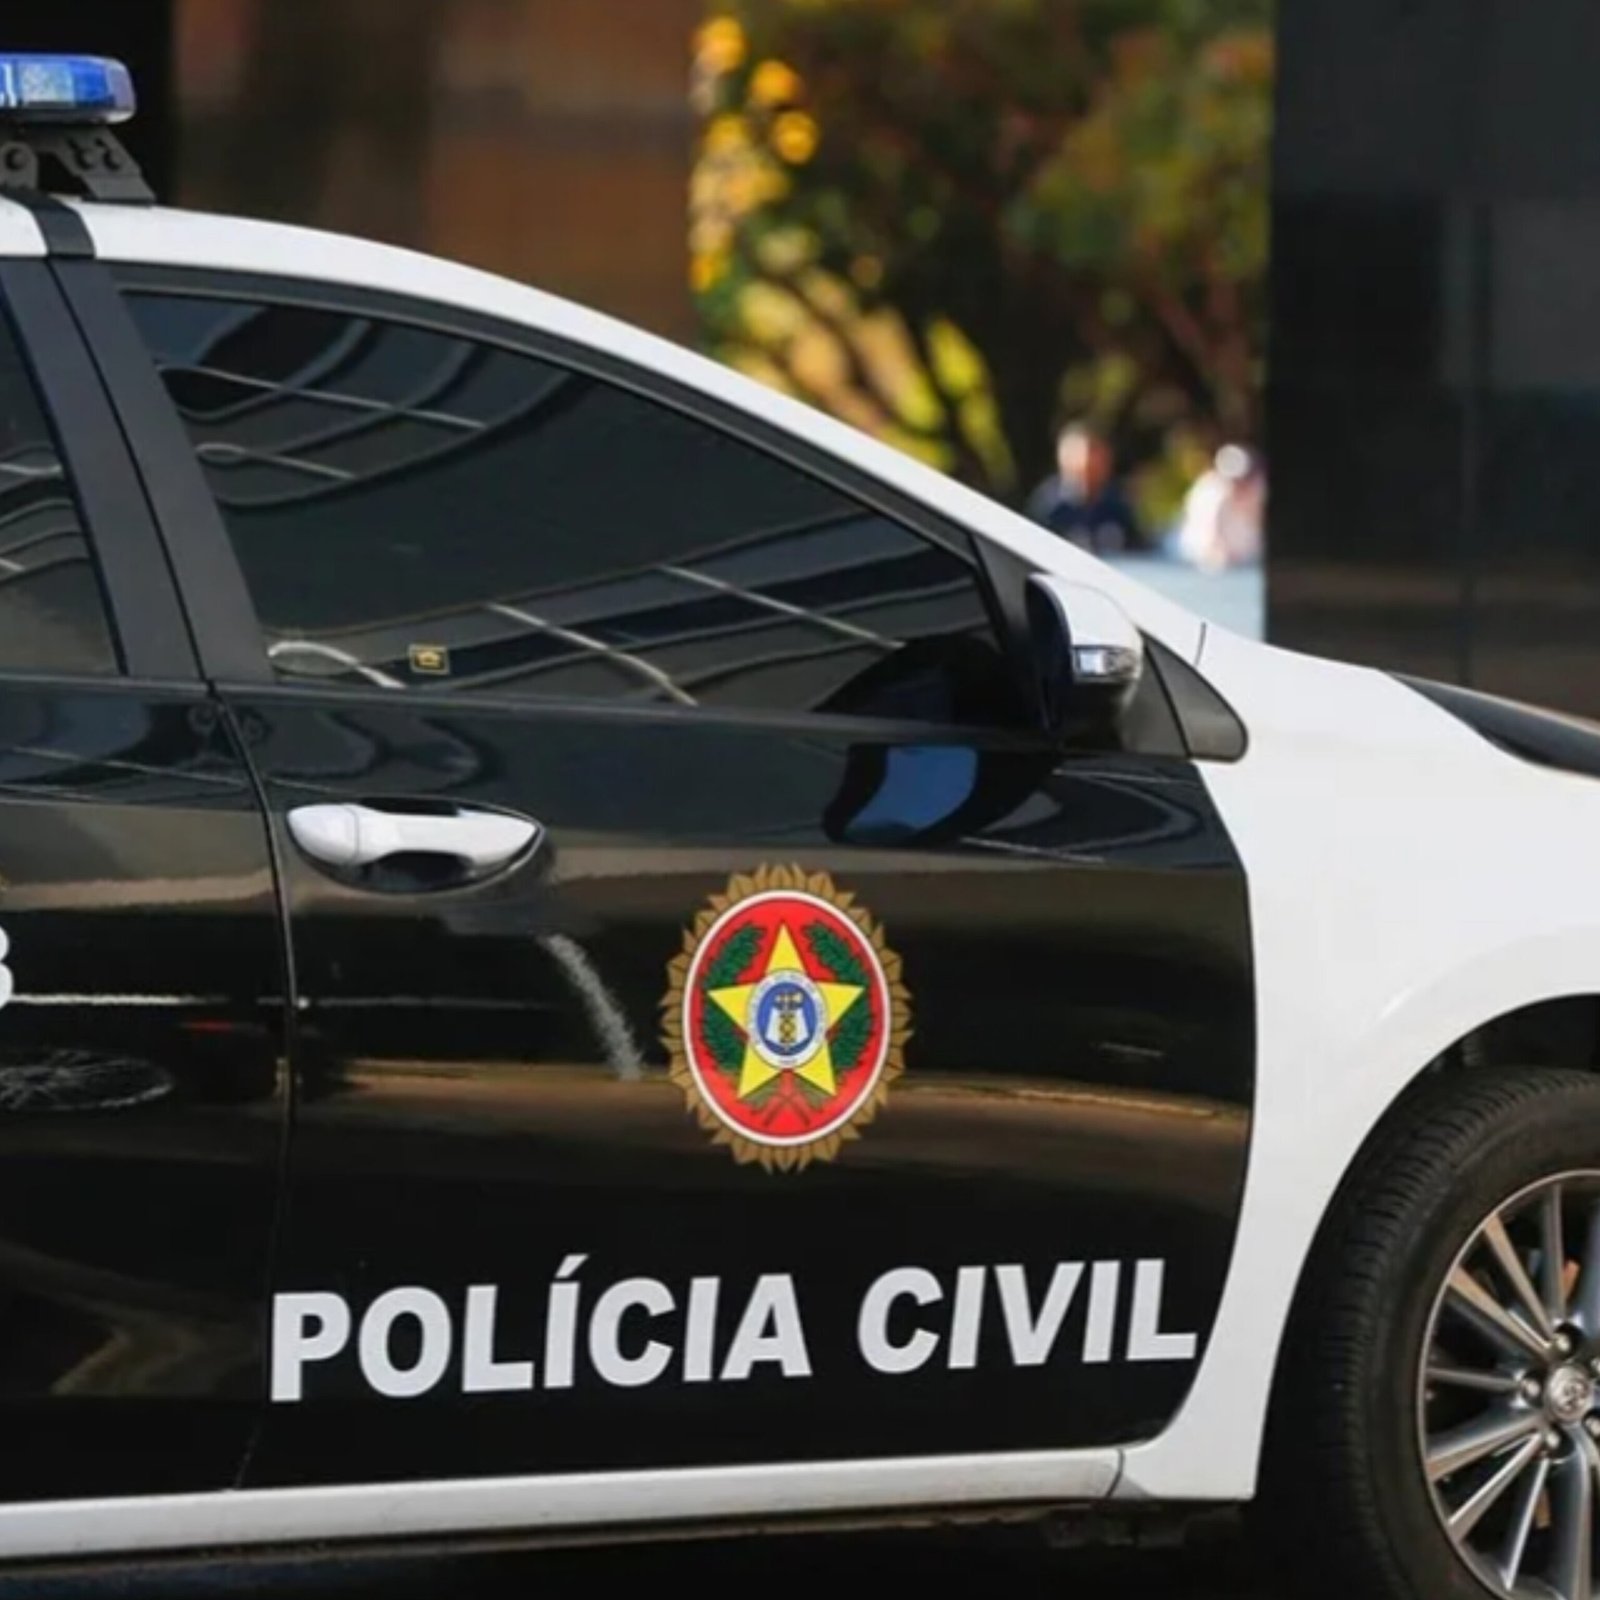 Político de São Gonçalo é preso por ligação com traficantes